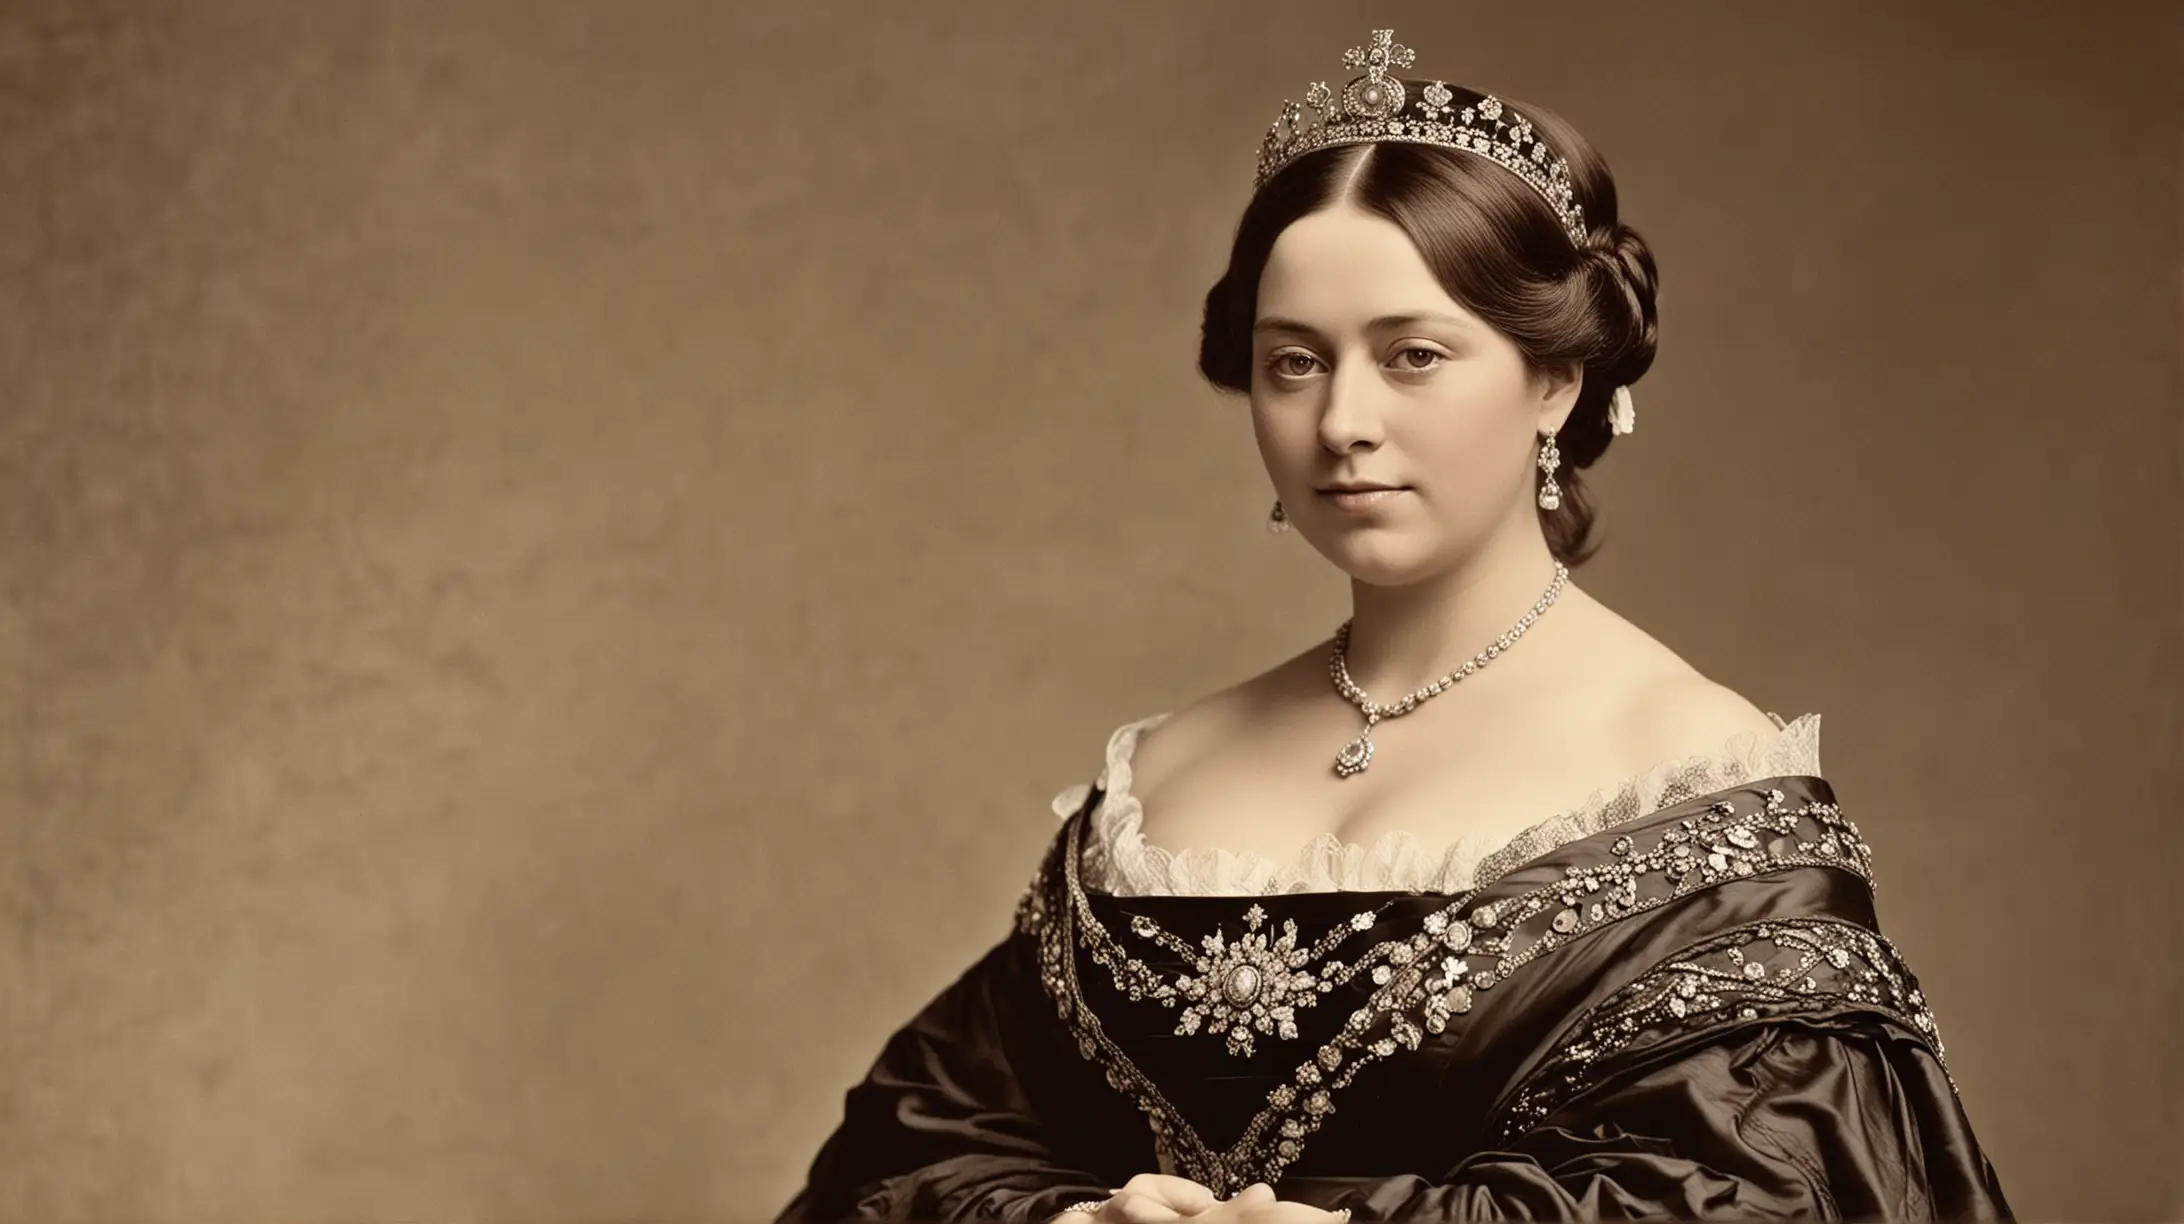 DAME UNA IMGEN REAL COMO TOMADA CON UNA CAMARA PROFECIONAL.: La Reina Victoria, nacida Alejandrina Victoria el 24 de mayo de 1819 en 